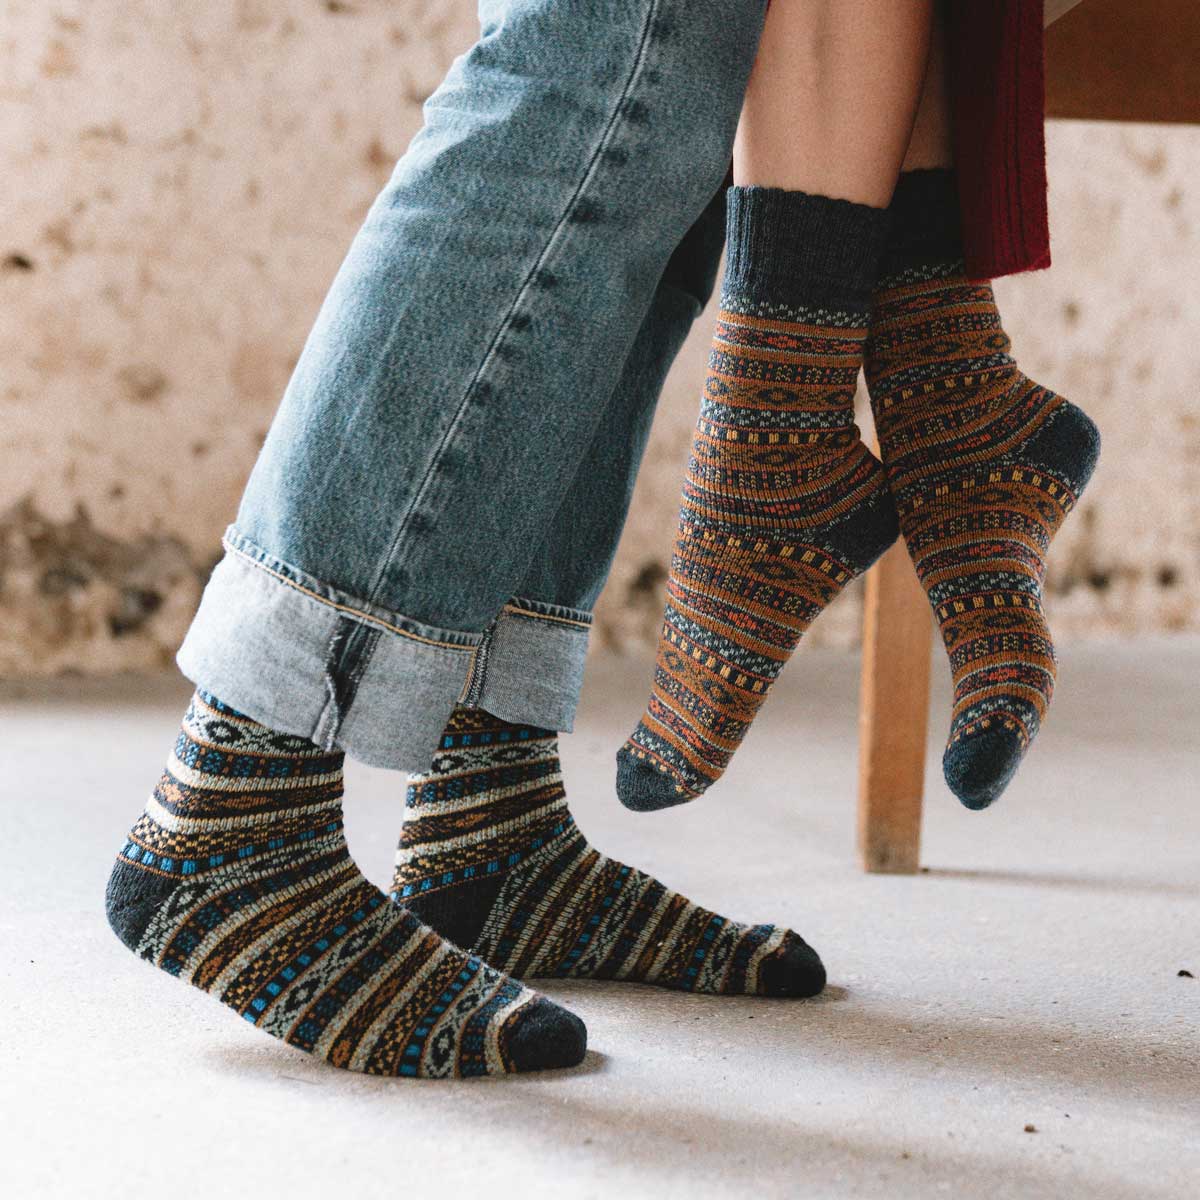 Merino Wool Seamless Toe Socks 6Pairs